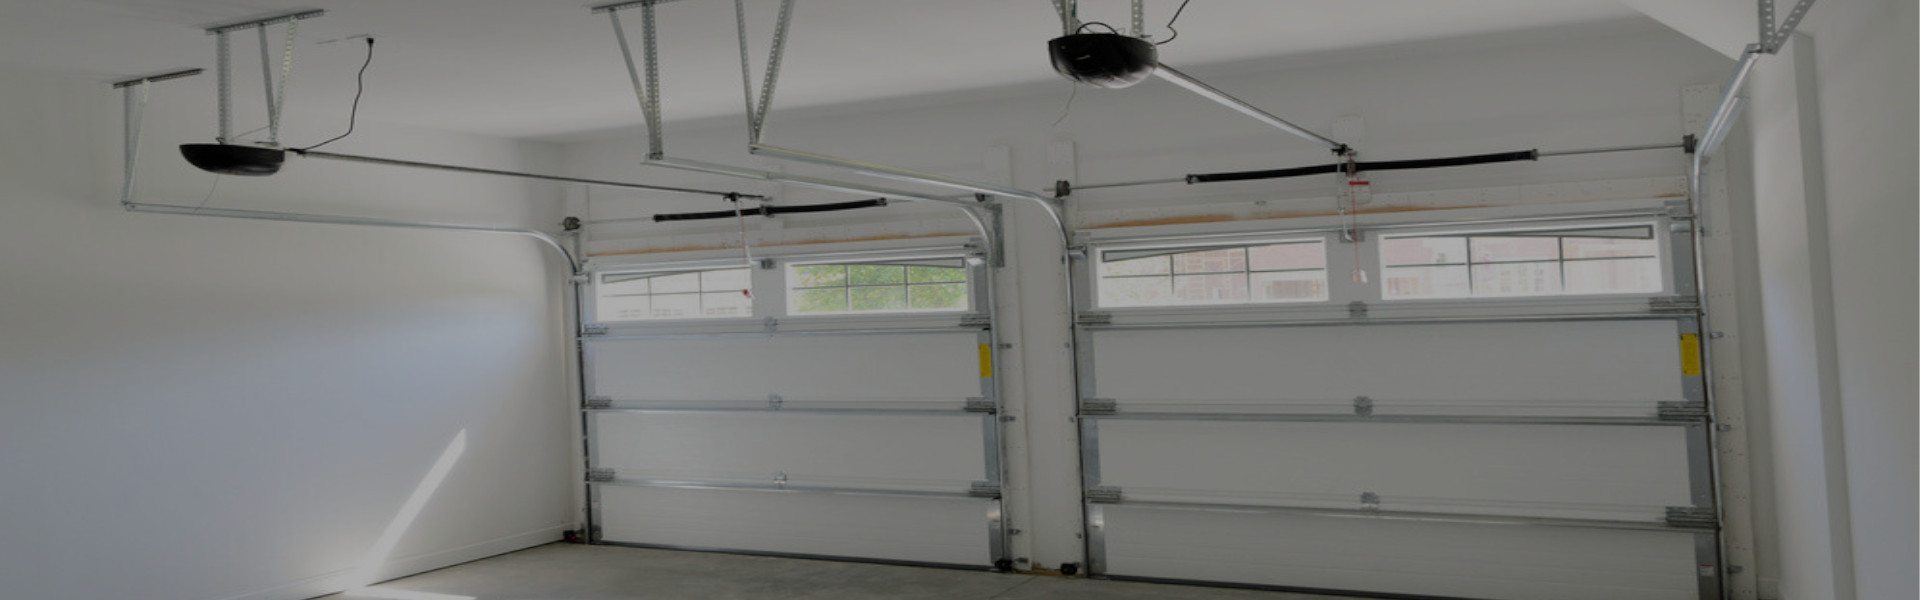 Slider Garage Door Repair, Glaziers in Ewell, Stoneleigh, KT17